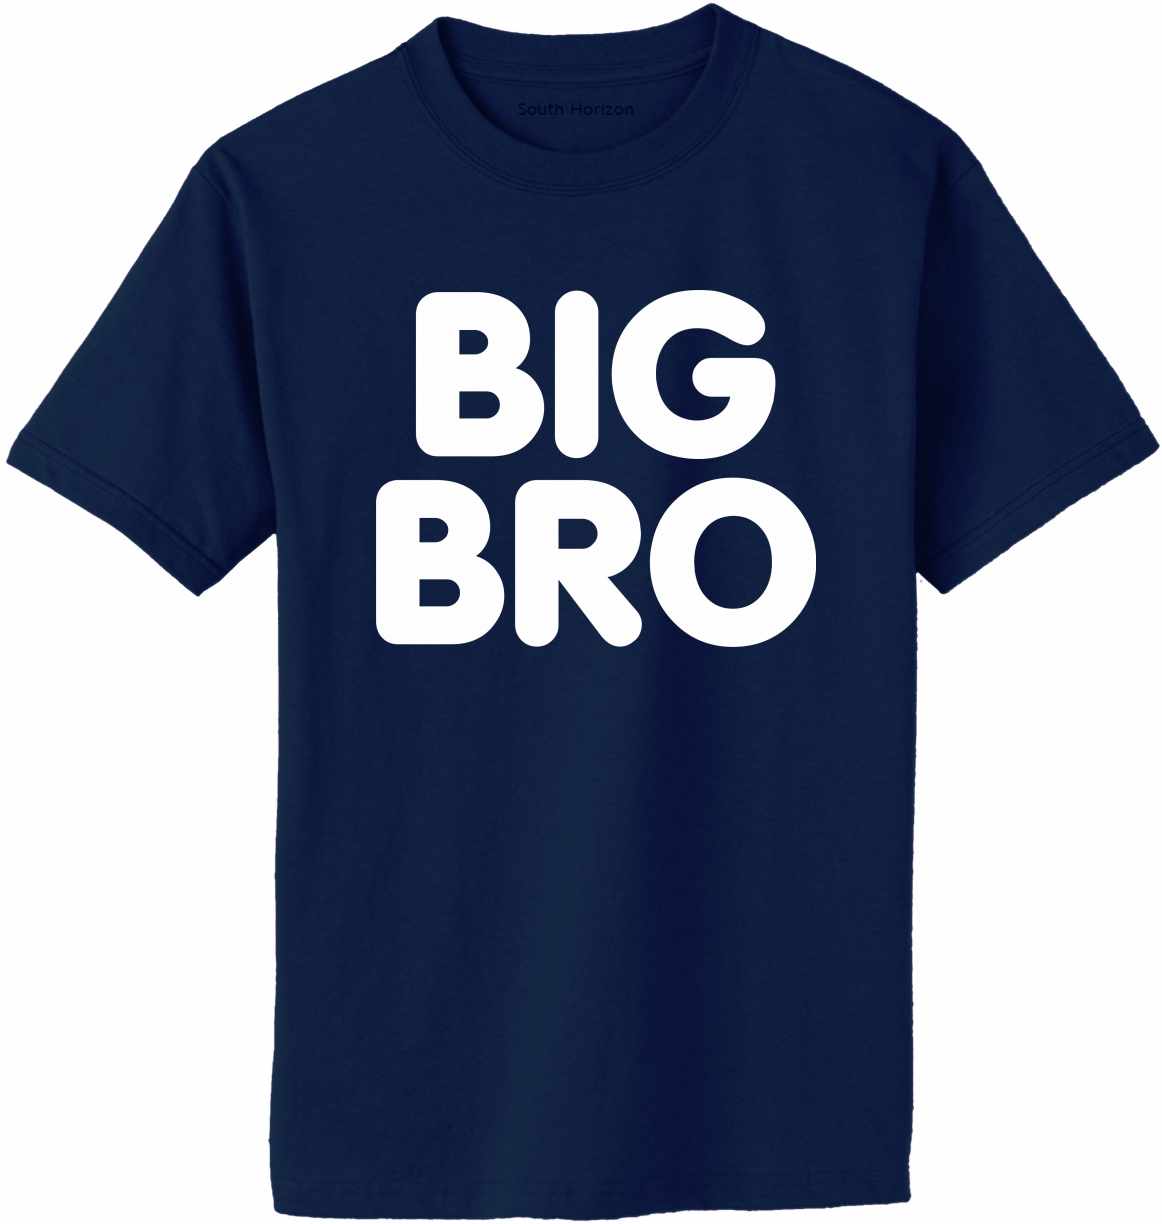 BIG BRO on Adult T-Shirt (#951-1)